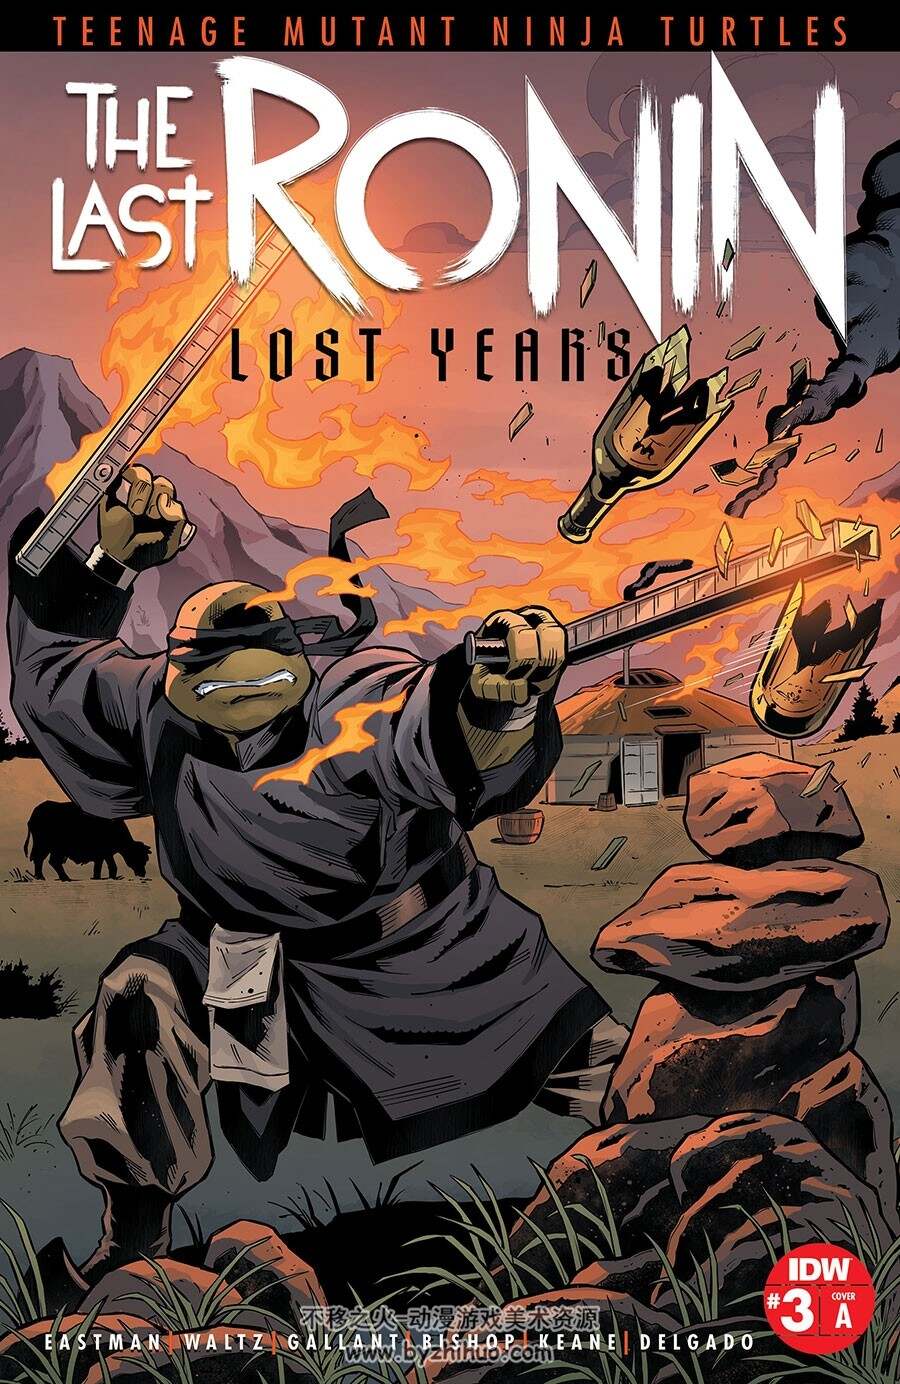 Teenage Mutant Ninja Turtles: The Last Ronin The Lost Years 第3册 漫画下载